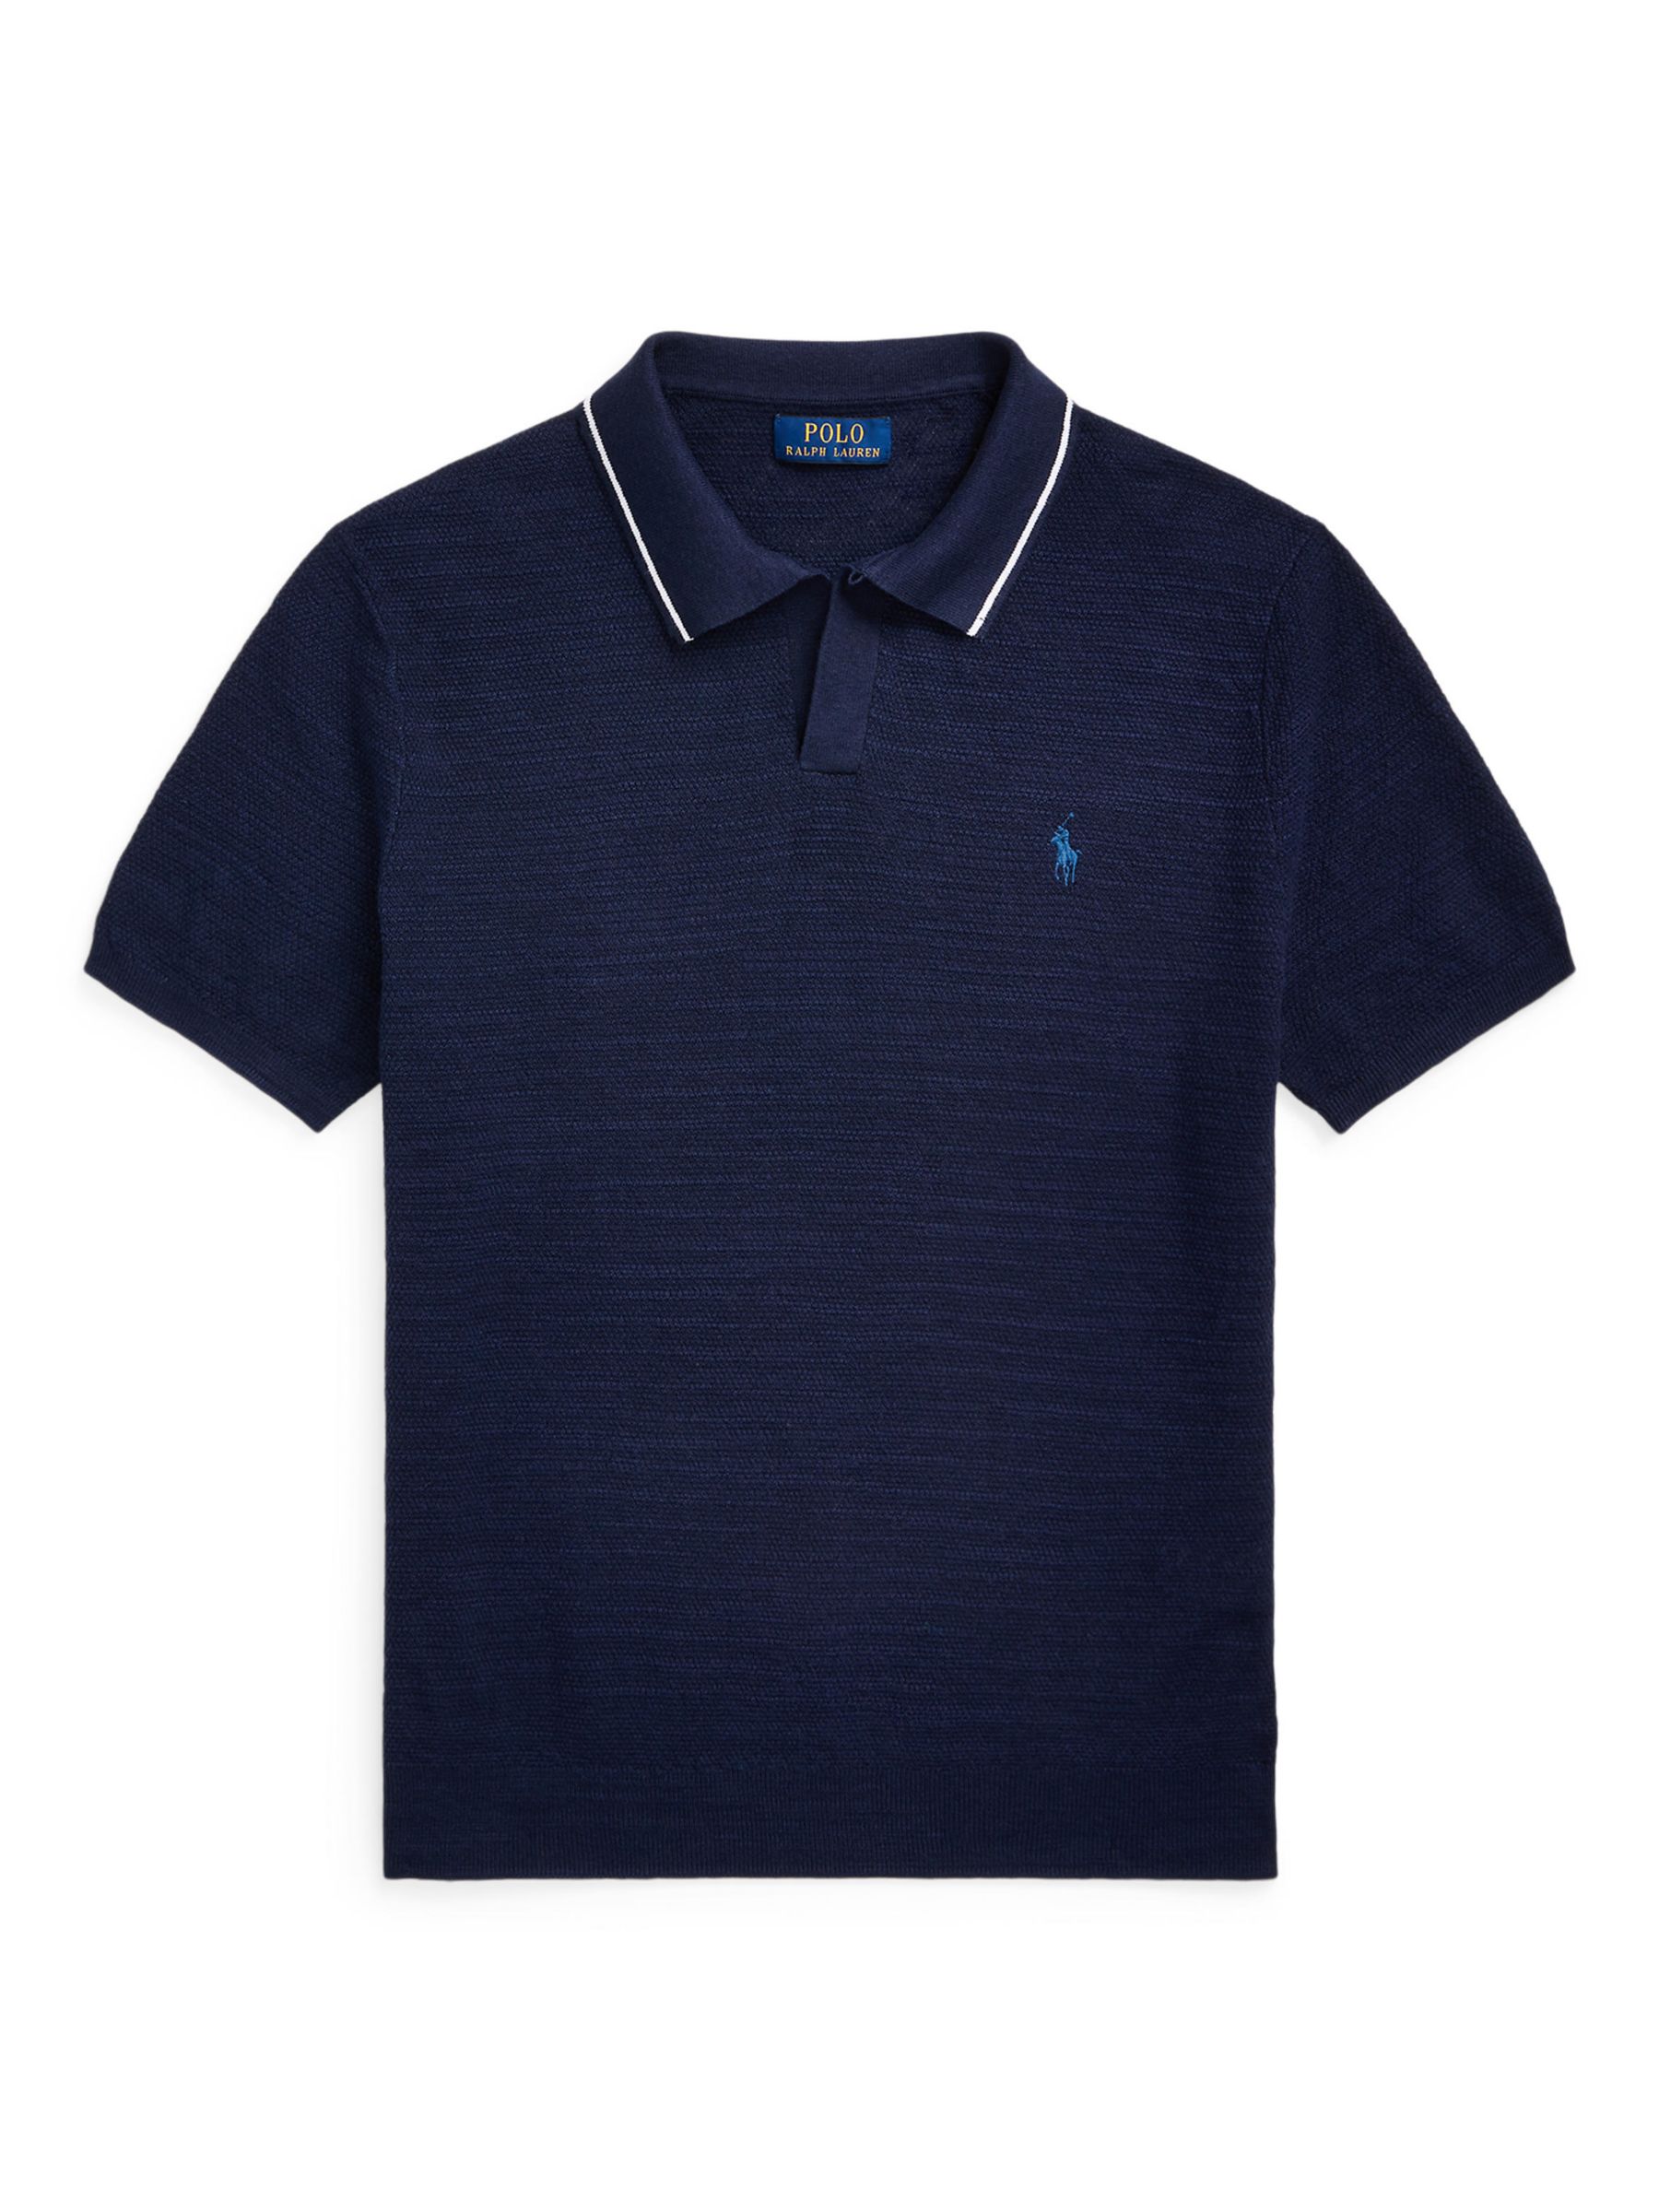 Ralph Lauren Linen Blend Polo Shirt, Bright Navy, M